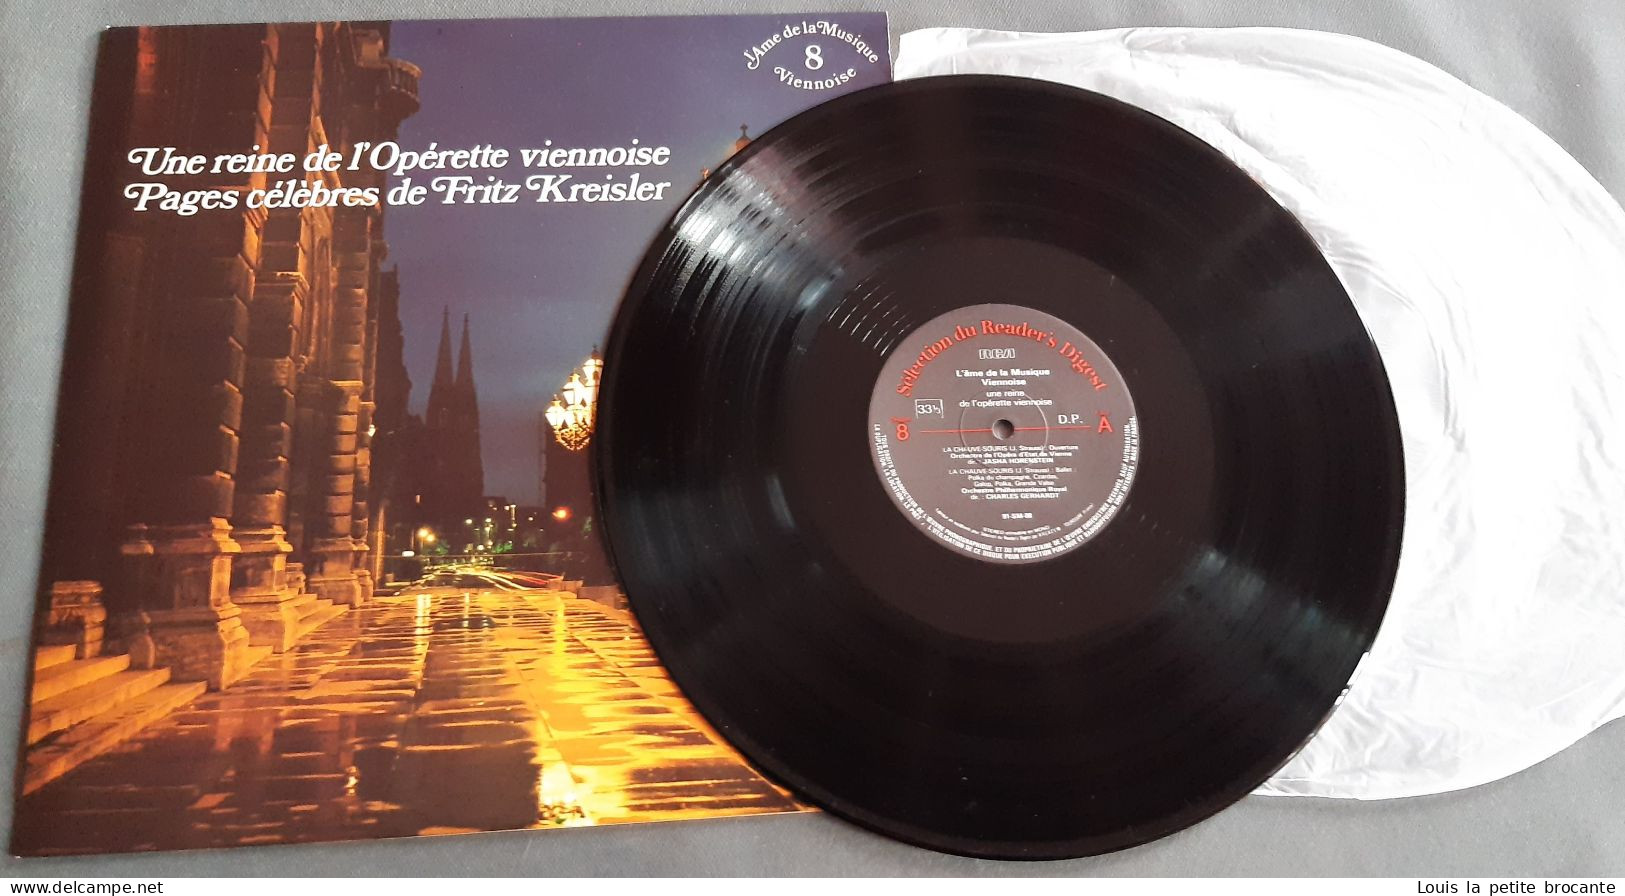 Coffret de 12 disques vinyles "L'Ame de la Musique Viennoise", 33 tours stéréo. RCA, Sélection du Reader's Digest 1978.